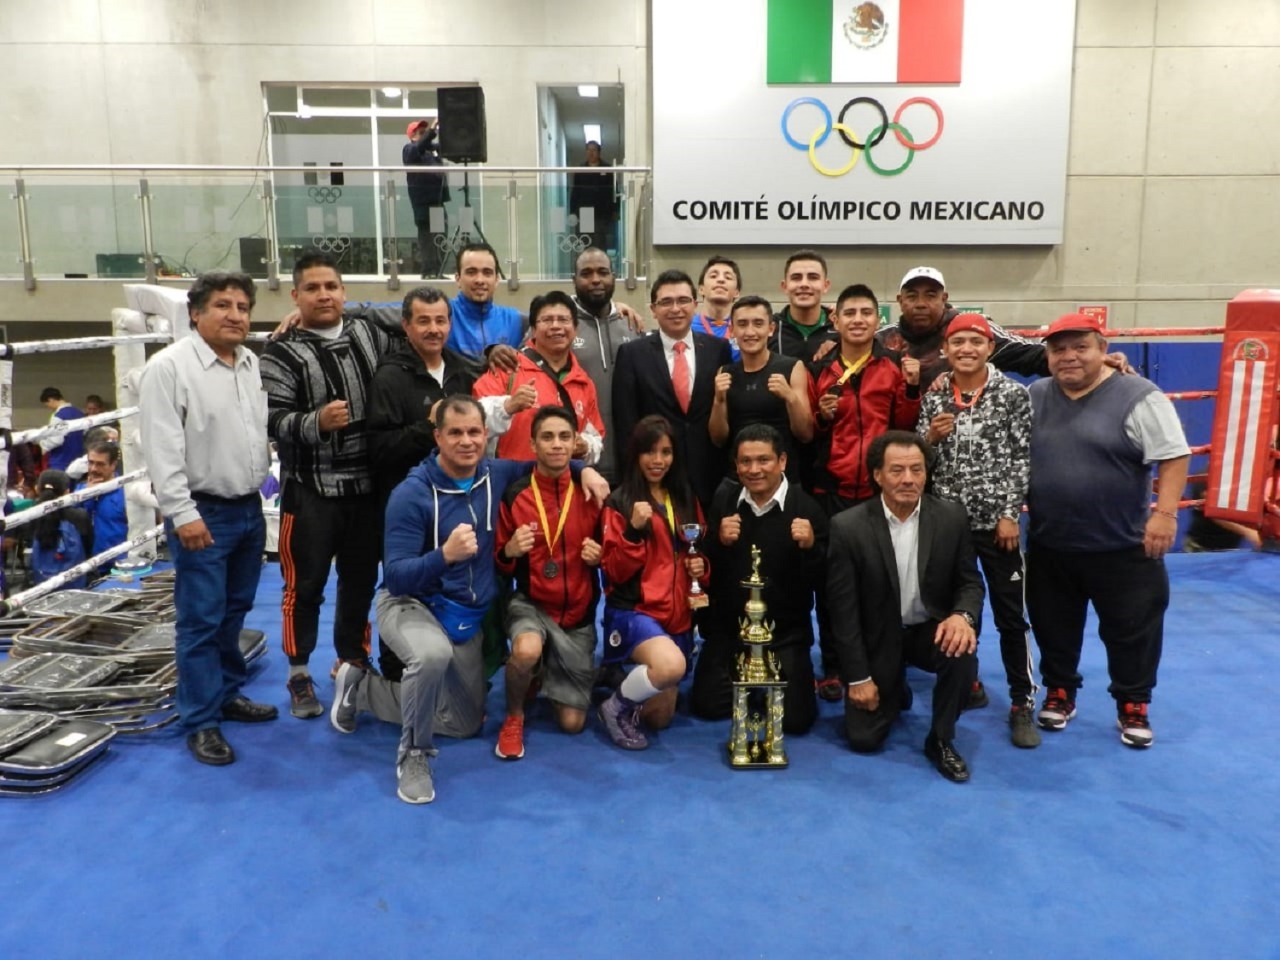 Es box una práctica deportiva que requiere disciplina y convicción: Carlos Duarte